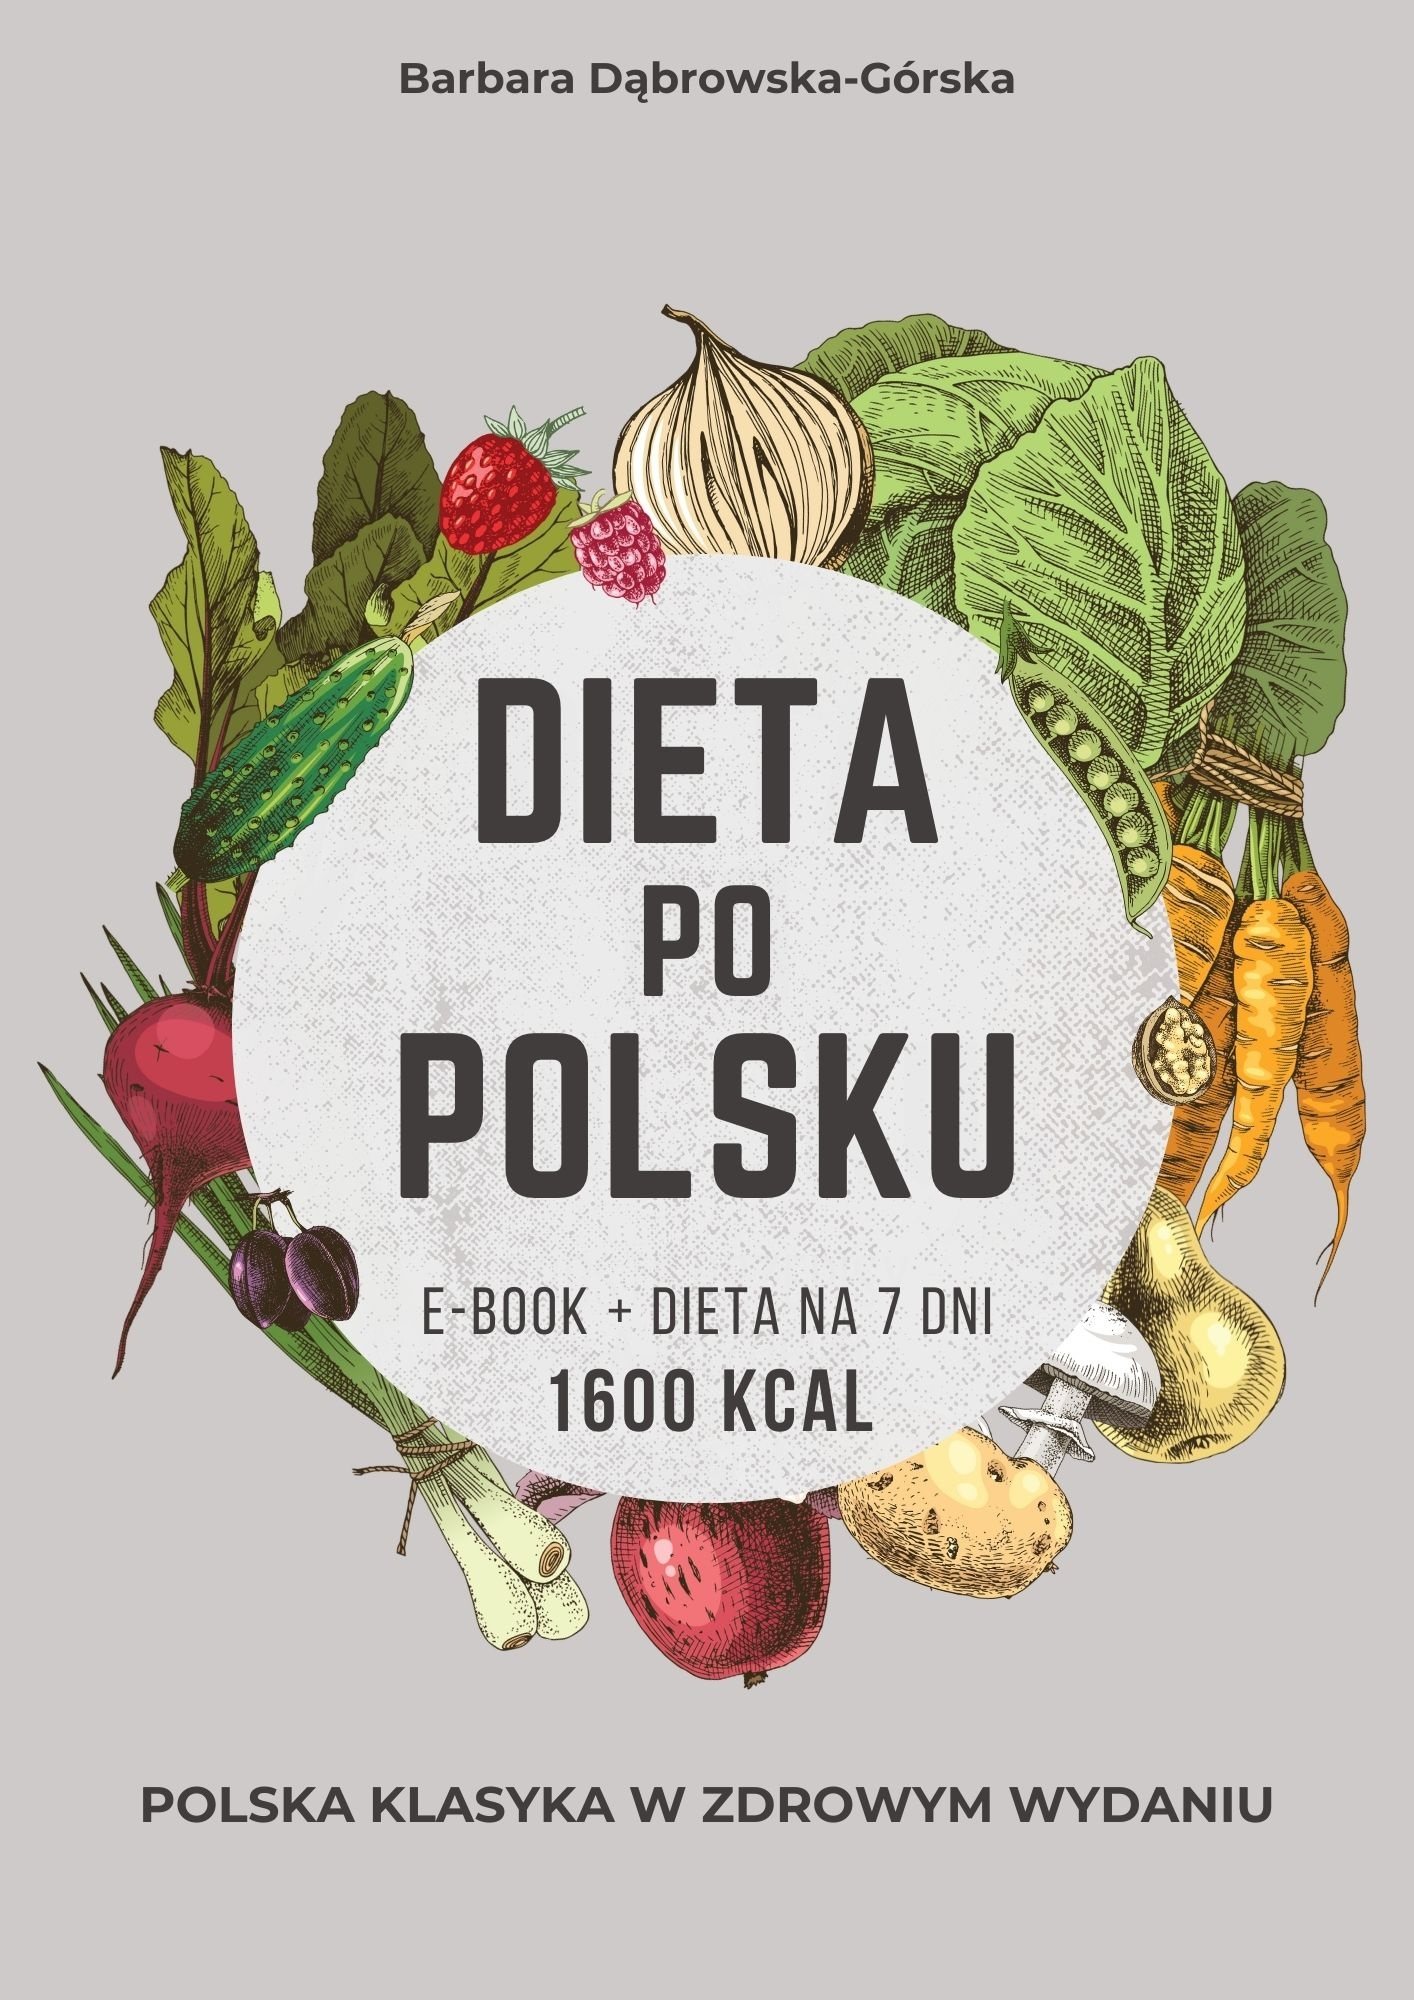 Dieta po polsku - dieta redukcyjna